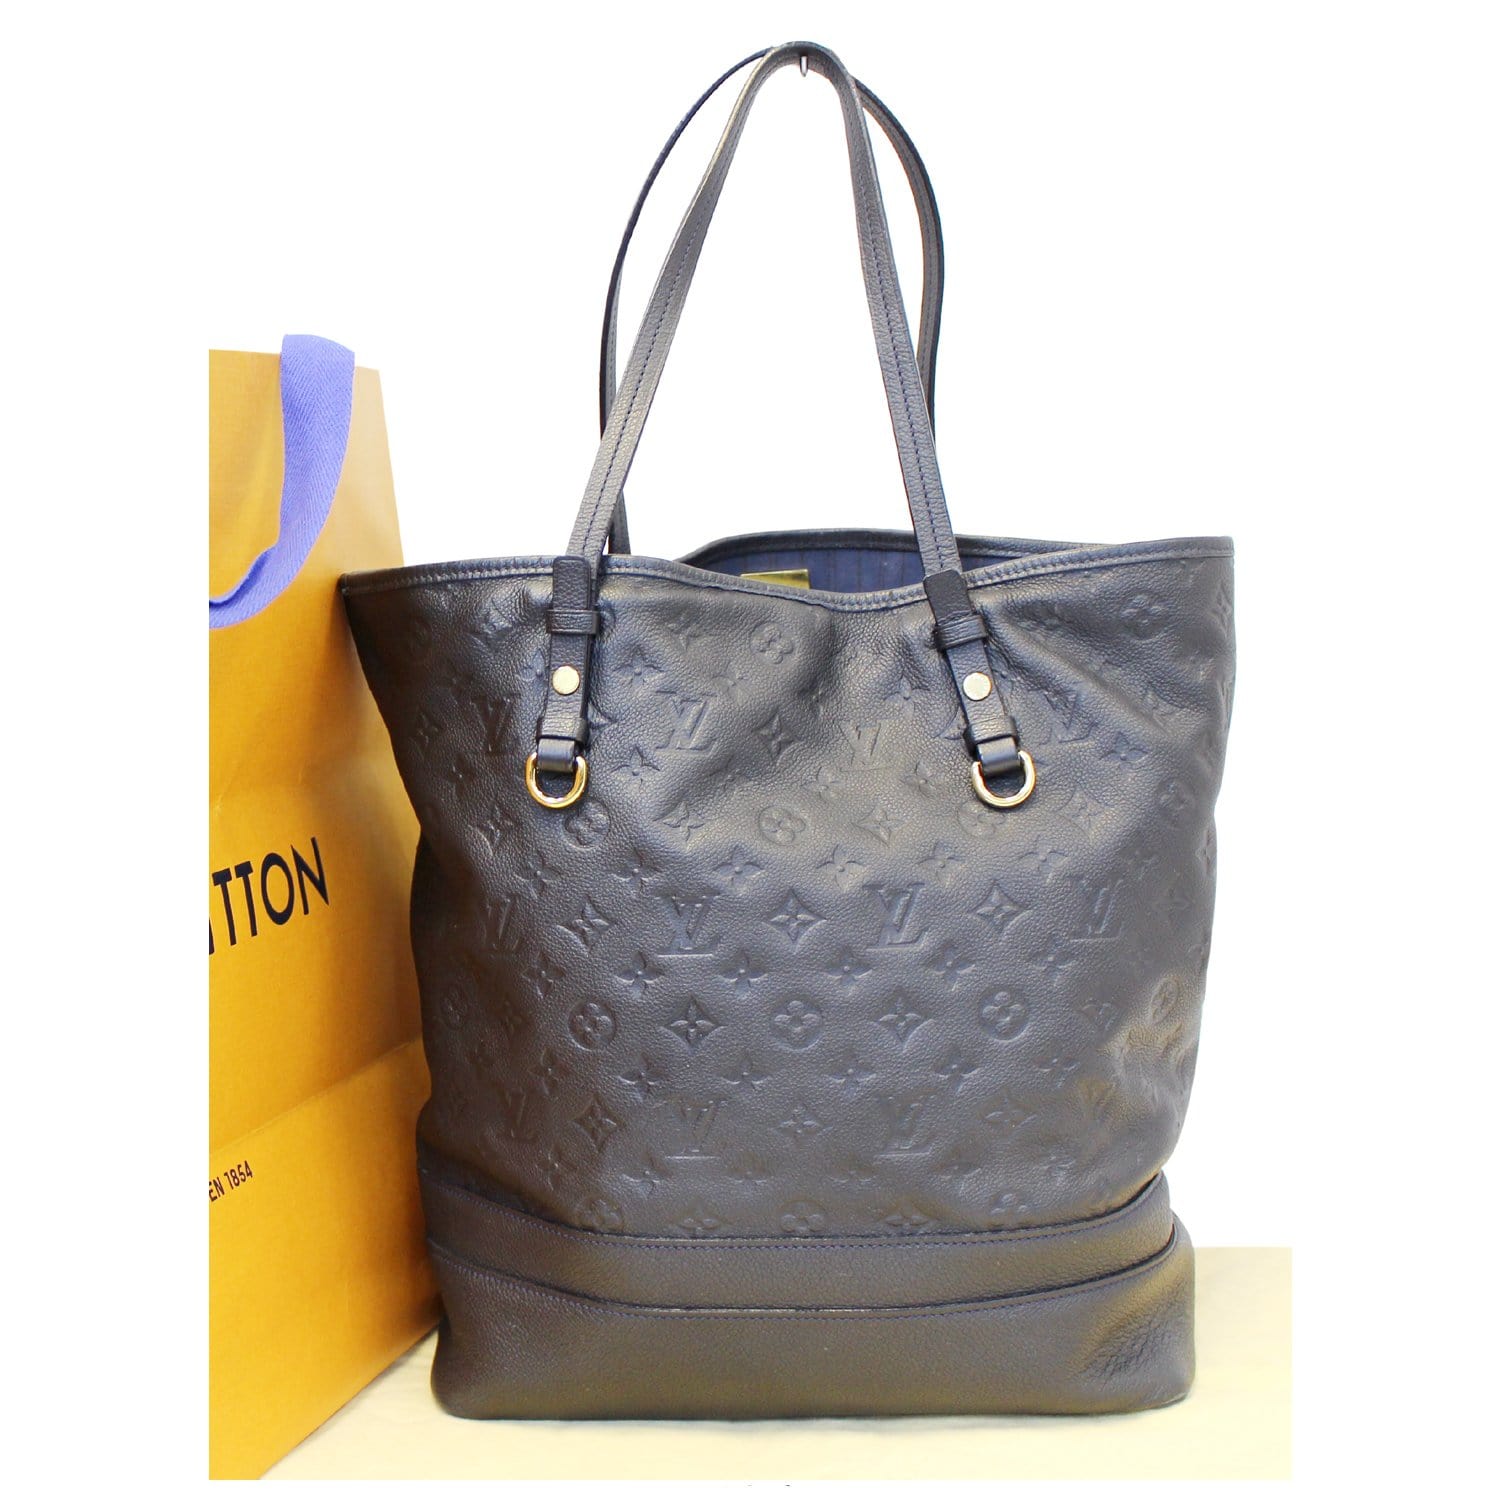 Louis Vuitton Citadine PM Empreinte Leather Shoulder Bag